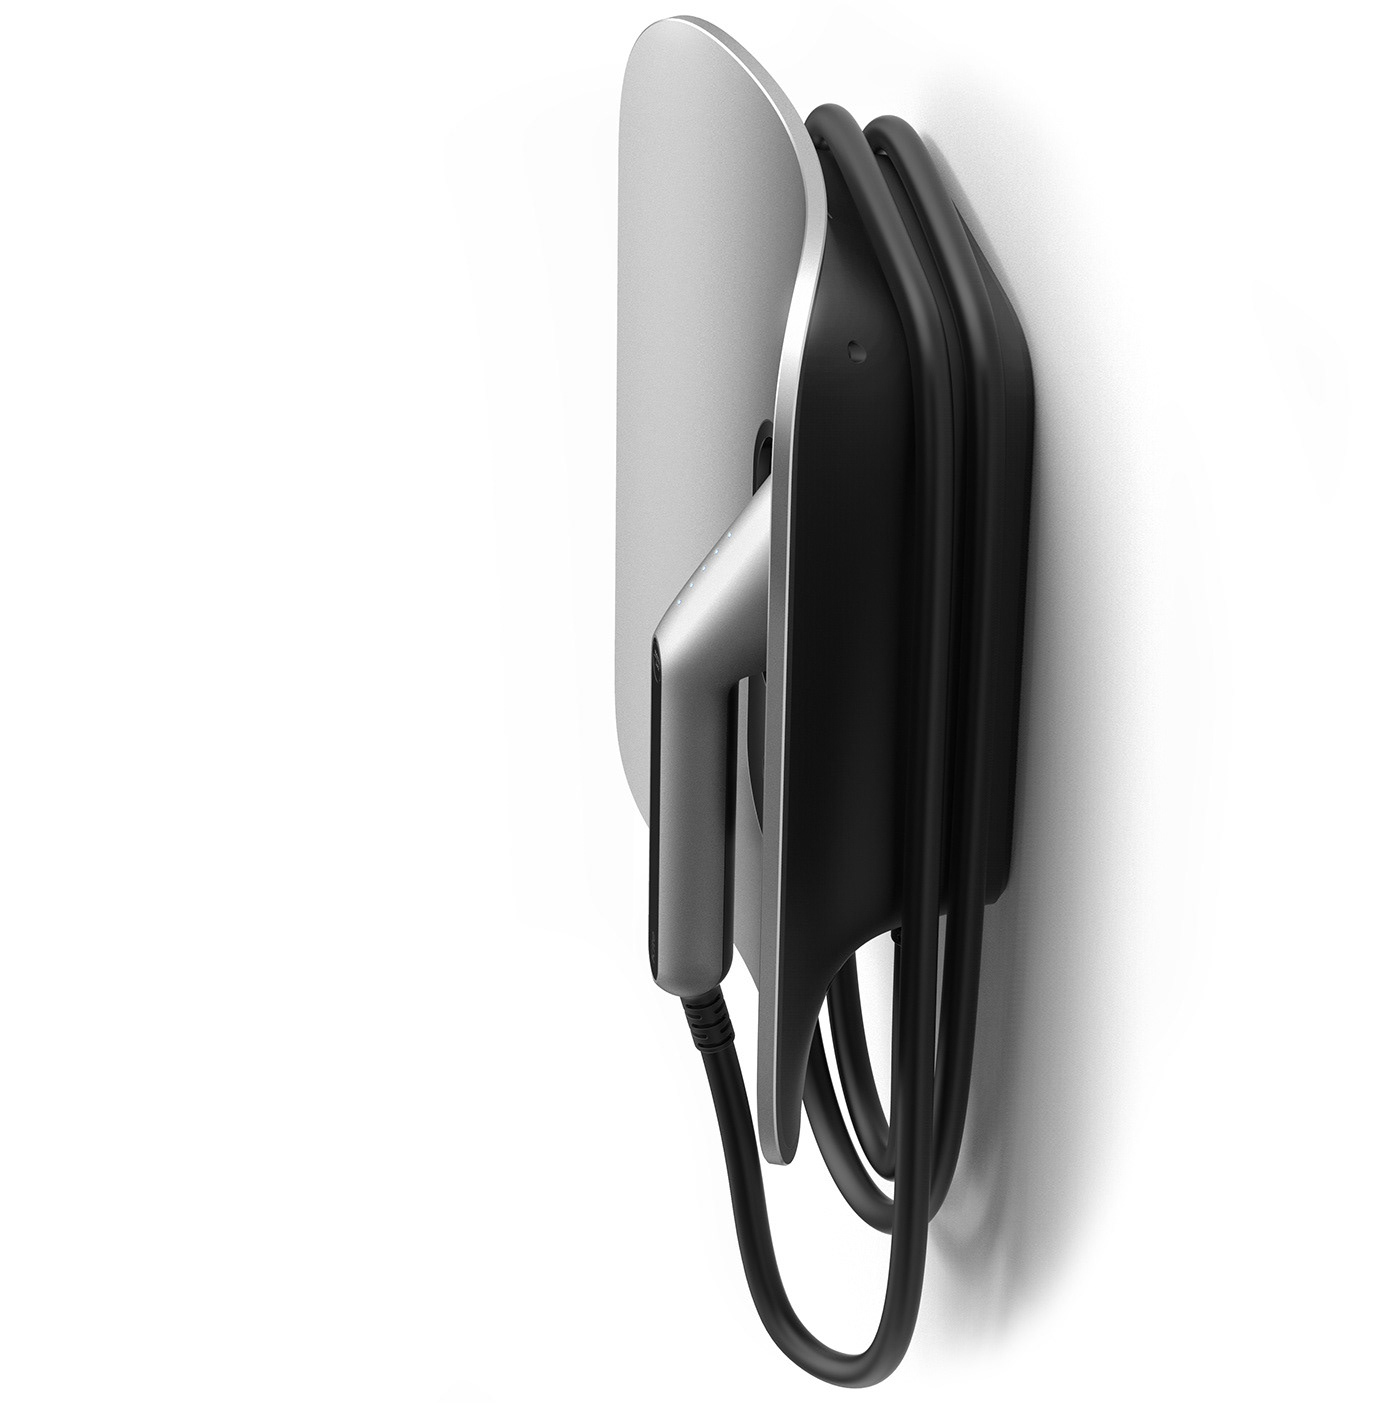 charger design ev ev-charging evcharger industrial industrialdesign offof product productdesign